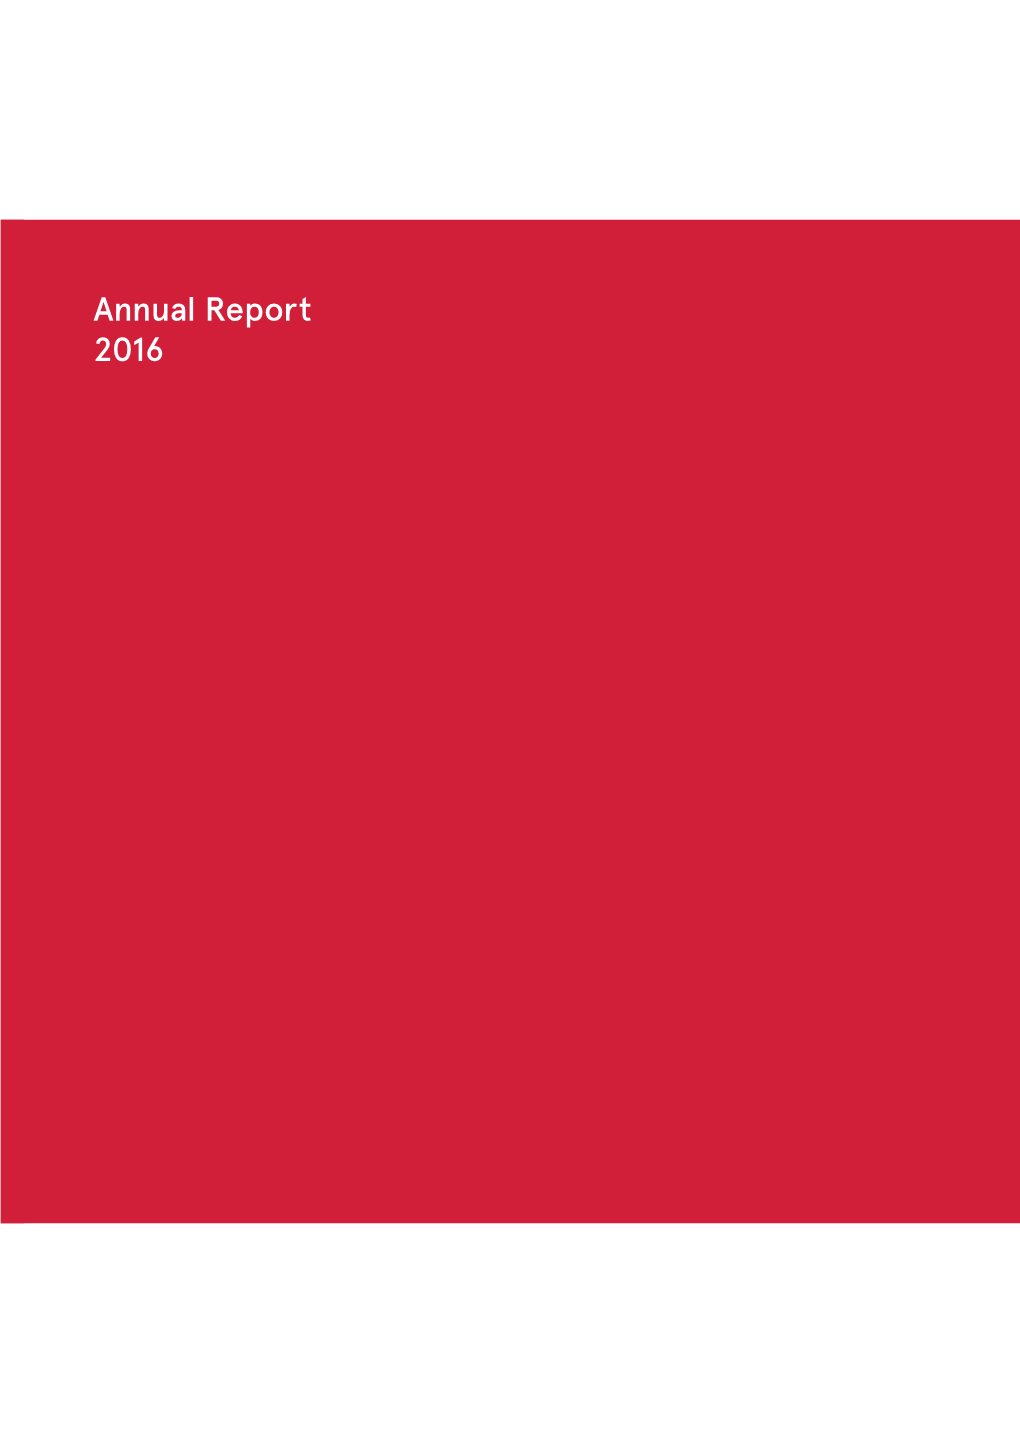 Annual Report 2016 Annual Report 2016 2016 2015